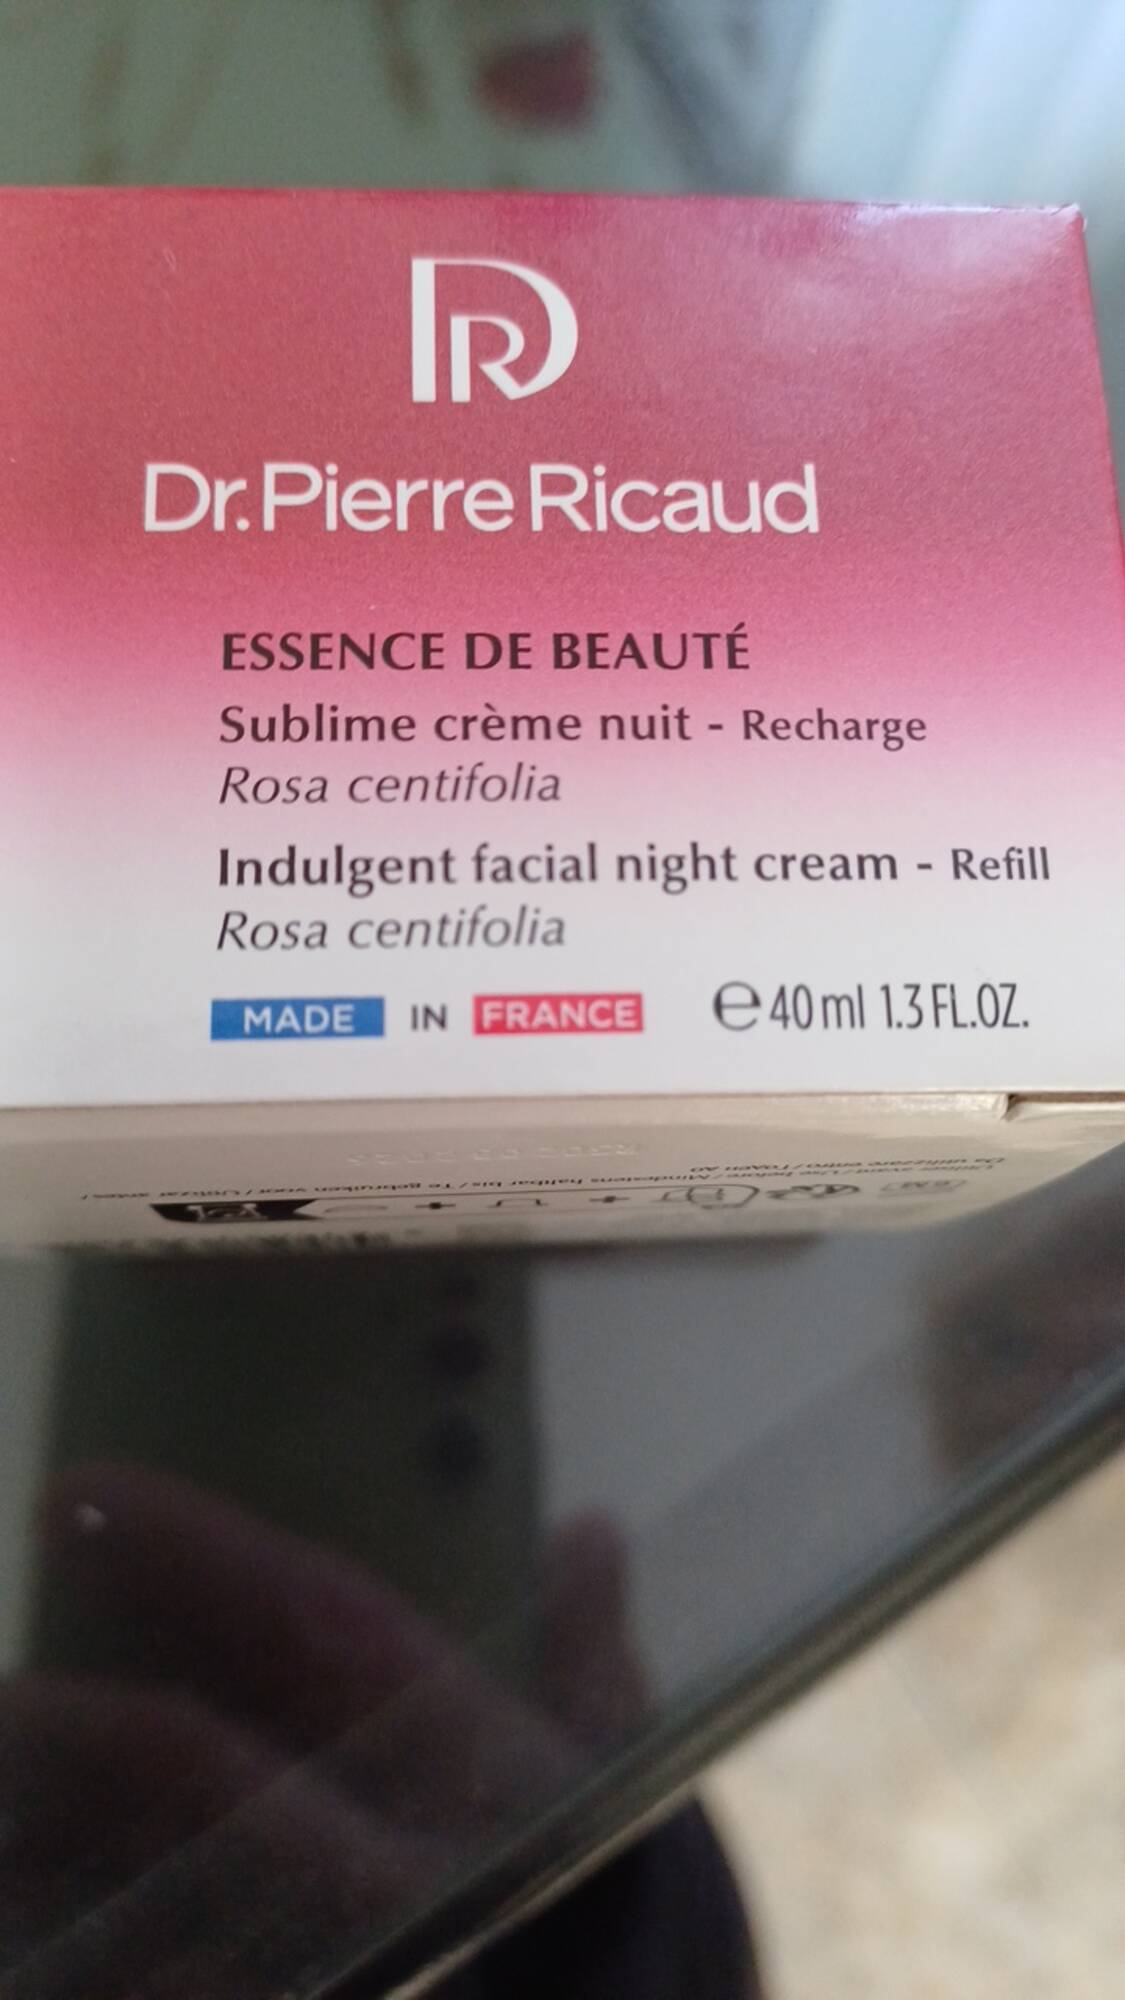 DR PIERRE RICAUD - Essence de beauté - Sublime crème nuit 